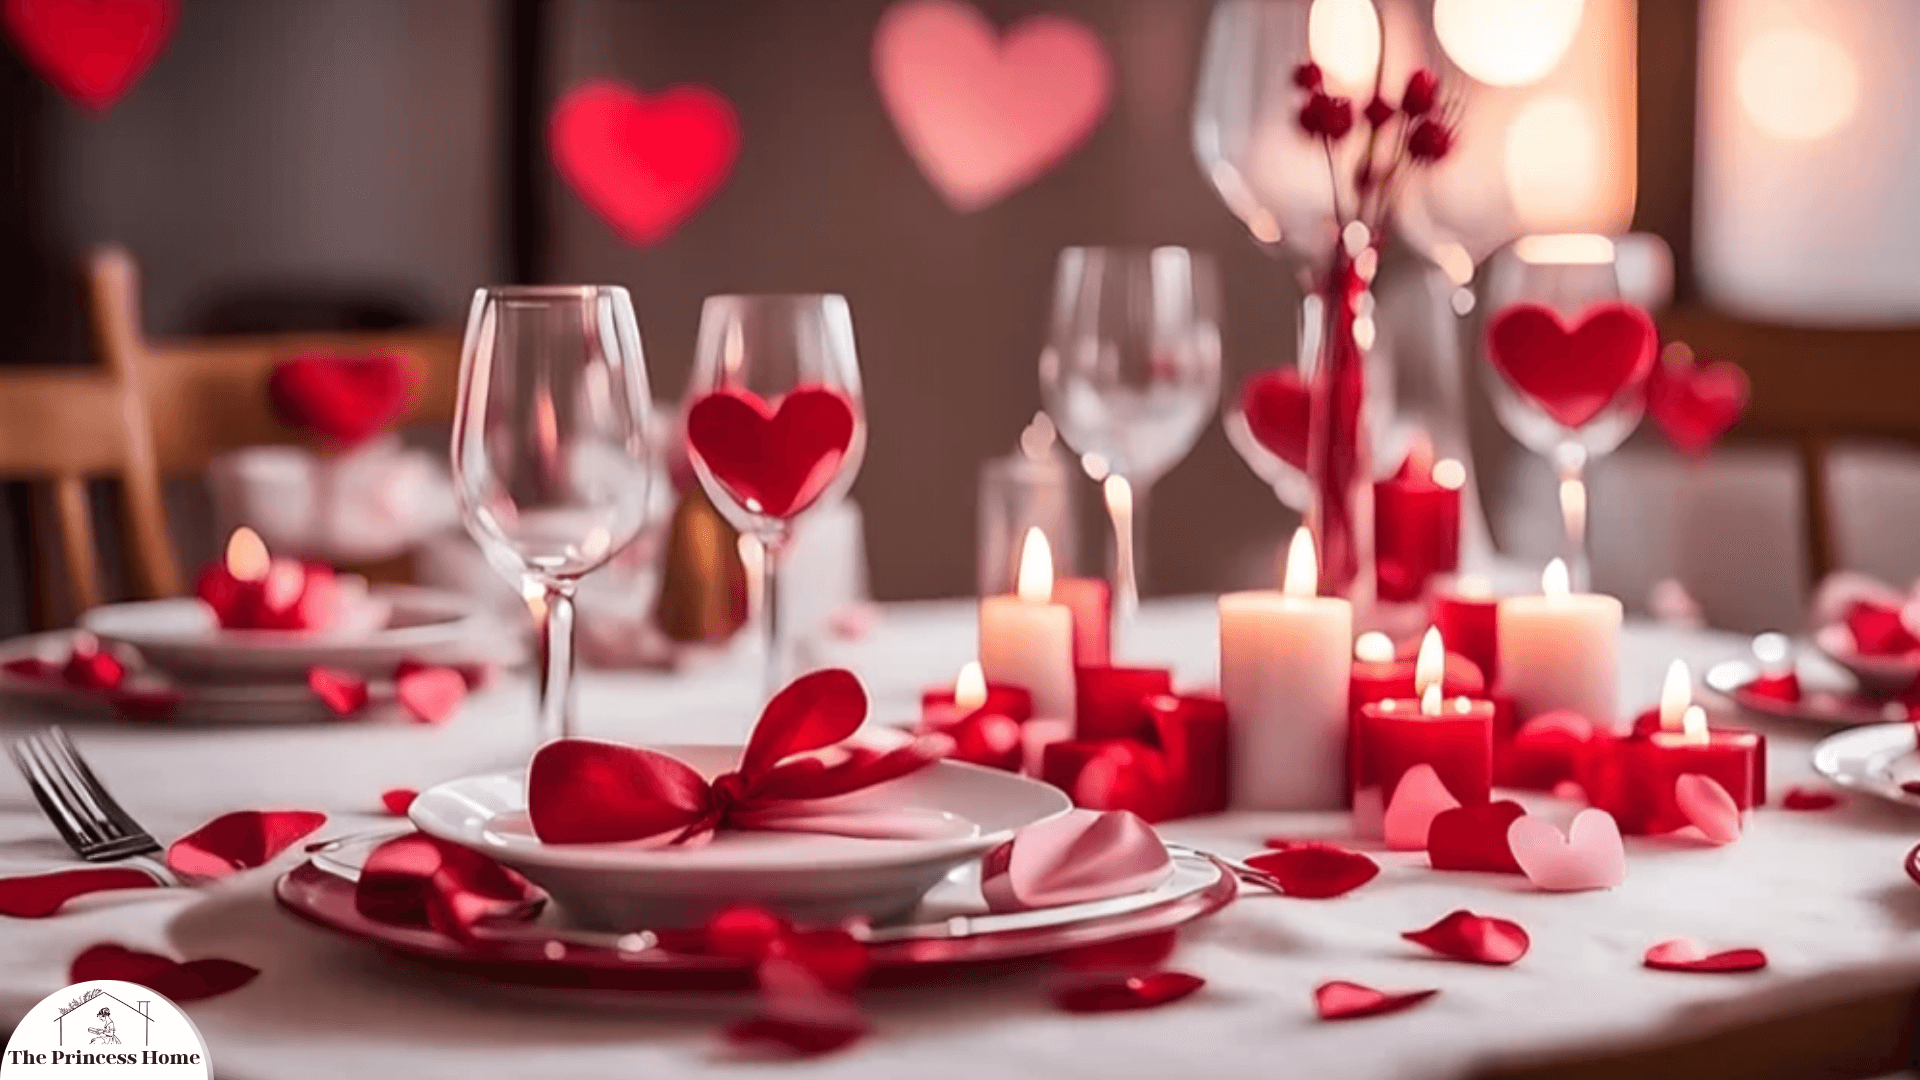 6.Romantic Table Setting